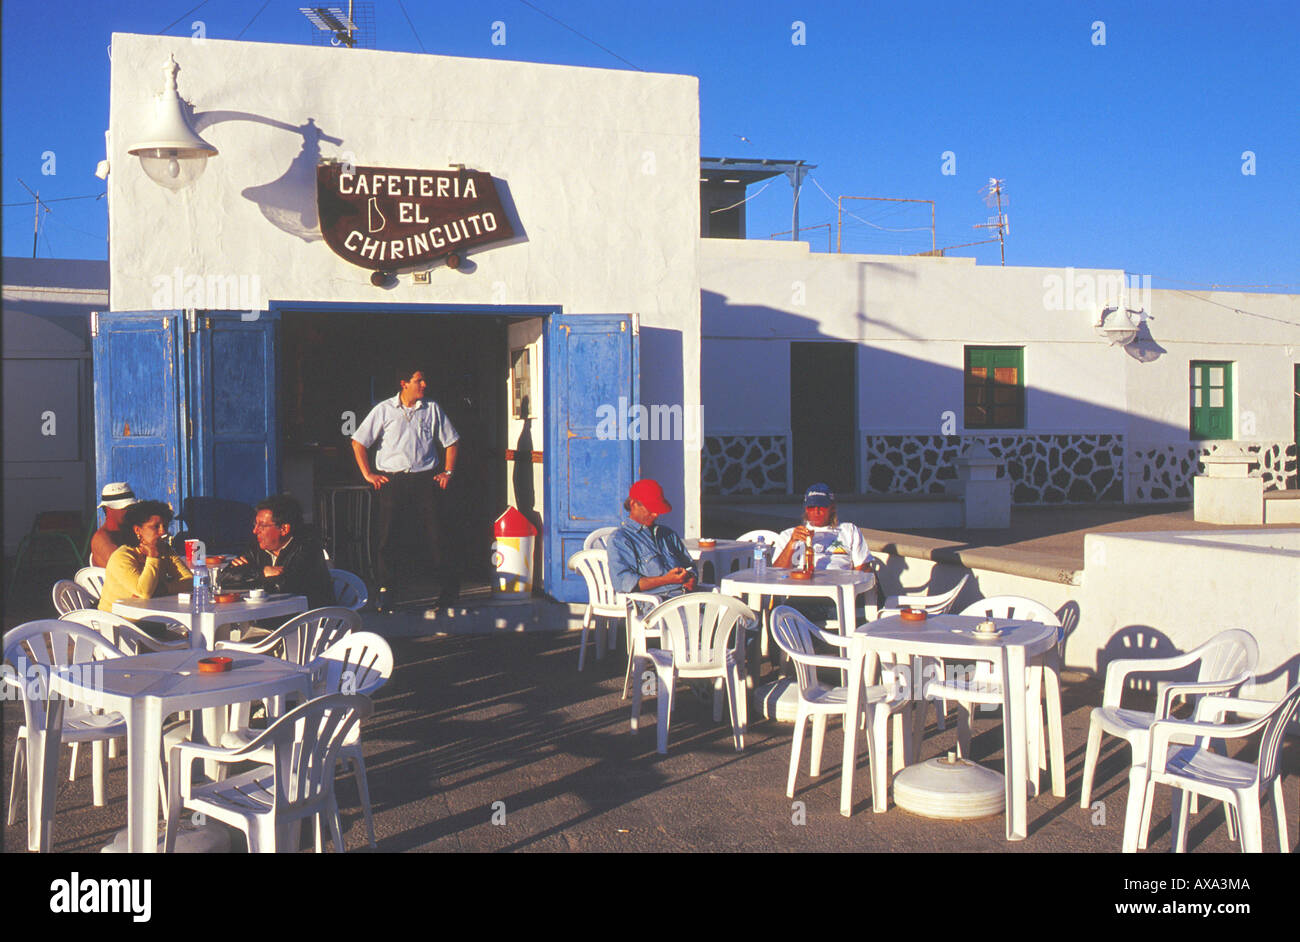 Cafeteria El Chiringuito, Caleta del Sebo, La Graciosa, Kanarische Inseln Spanien, near Lanzarote Stock Photo